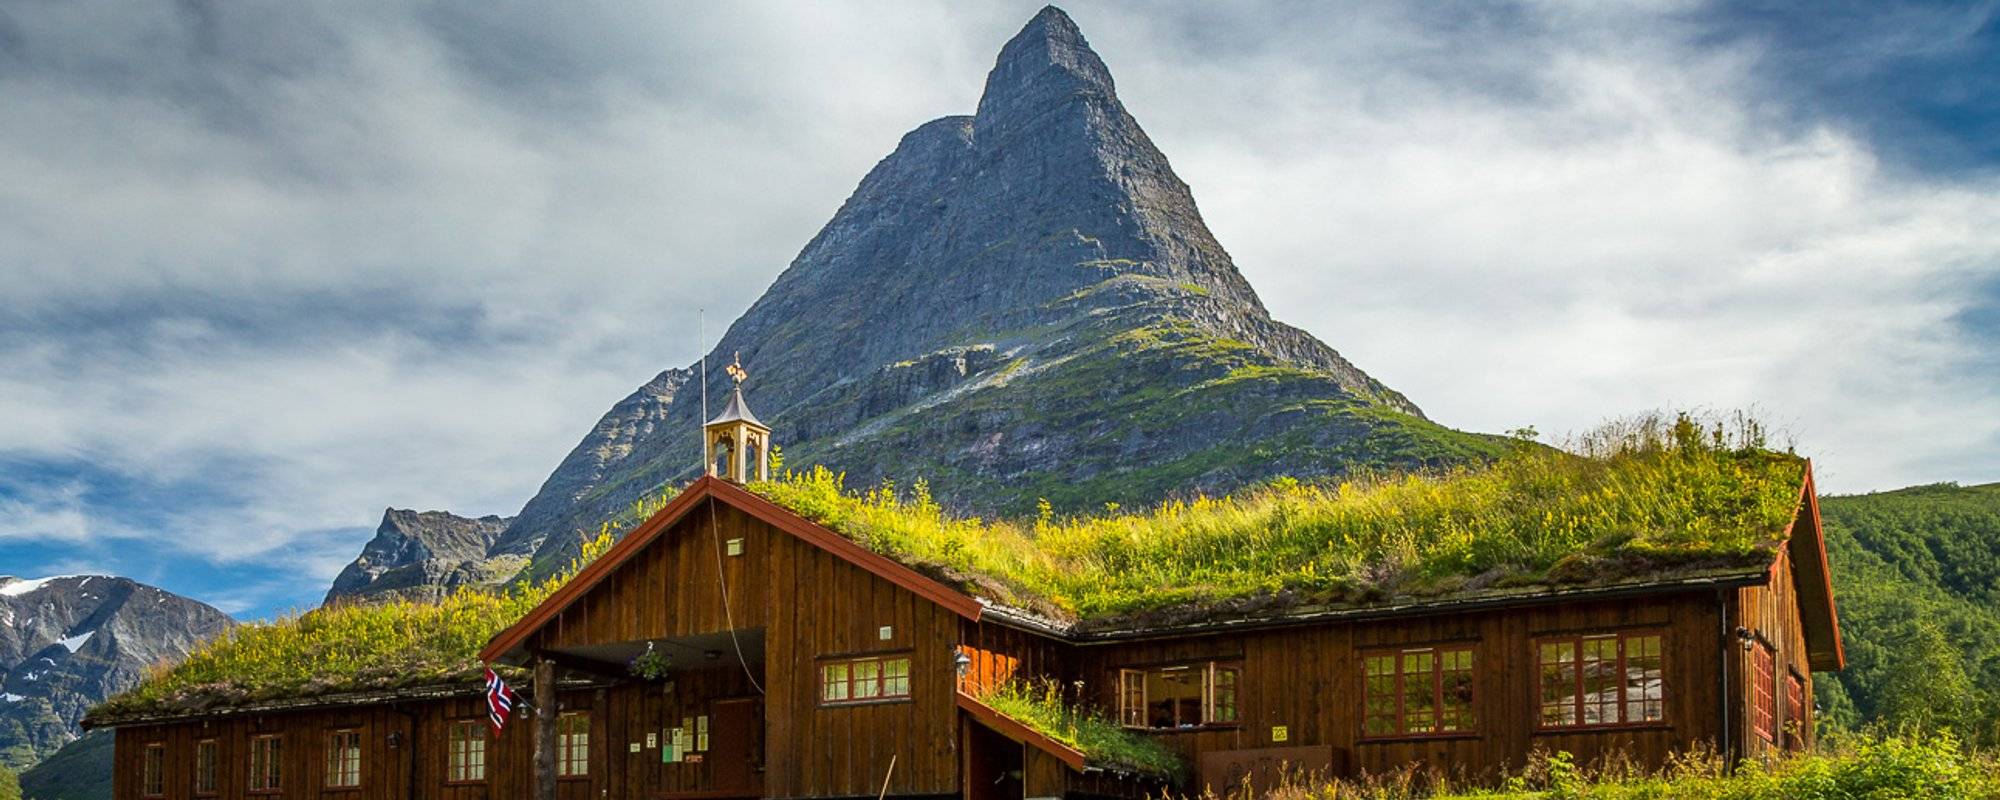 Norwegian landscapes: Innerdalshytta tourist shelter